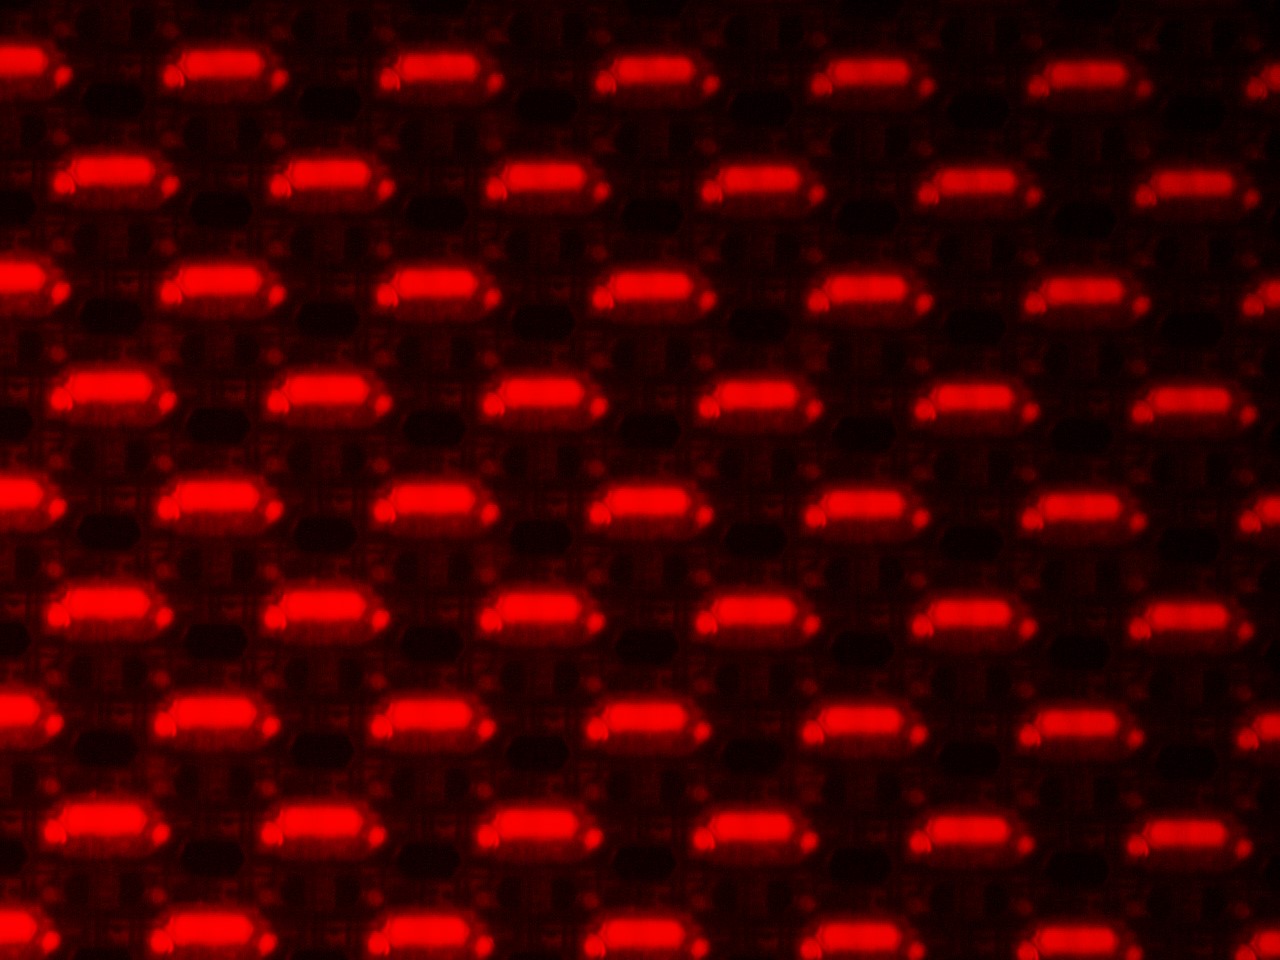 圖一：OLED (有機發光二極體)面板在LV150ND的20X EPI螢石物鏡下，使用TRITC螢光濾片組進行觀察拍照